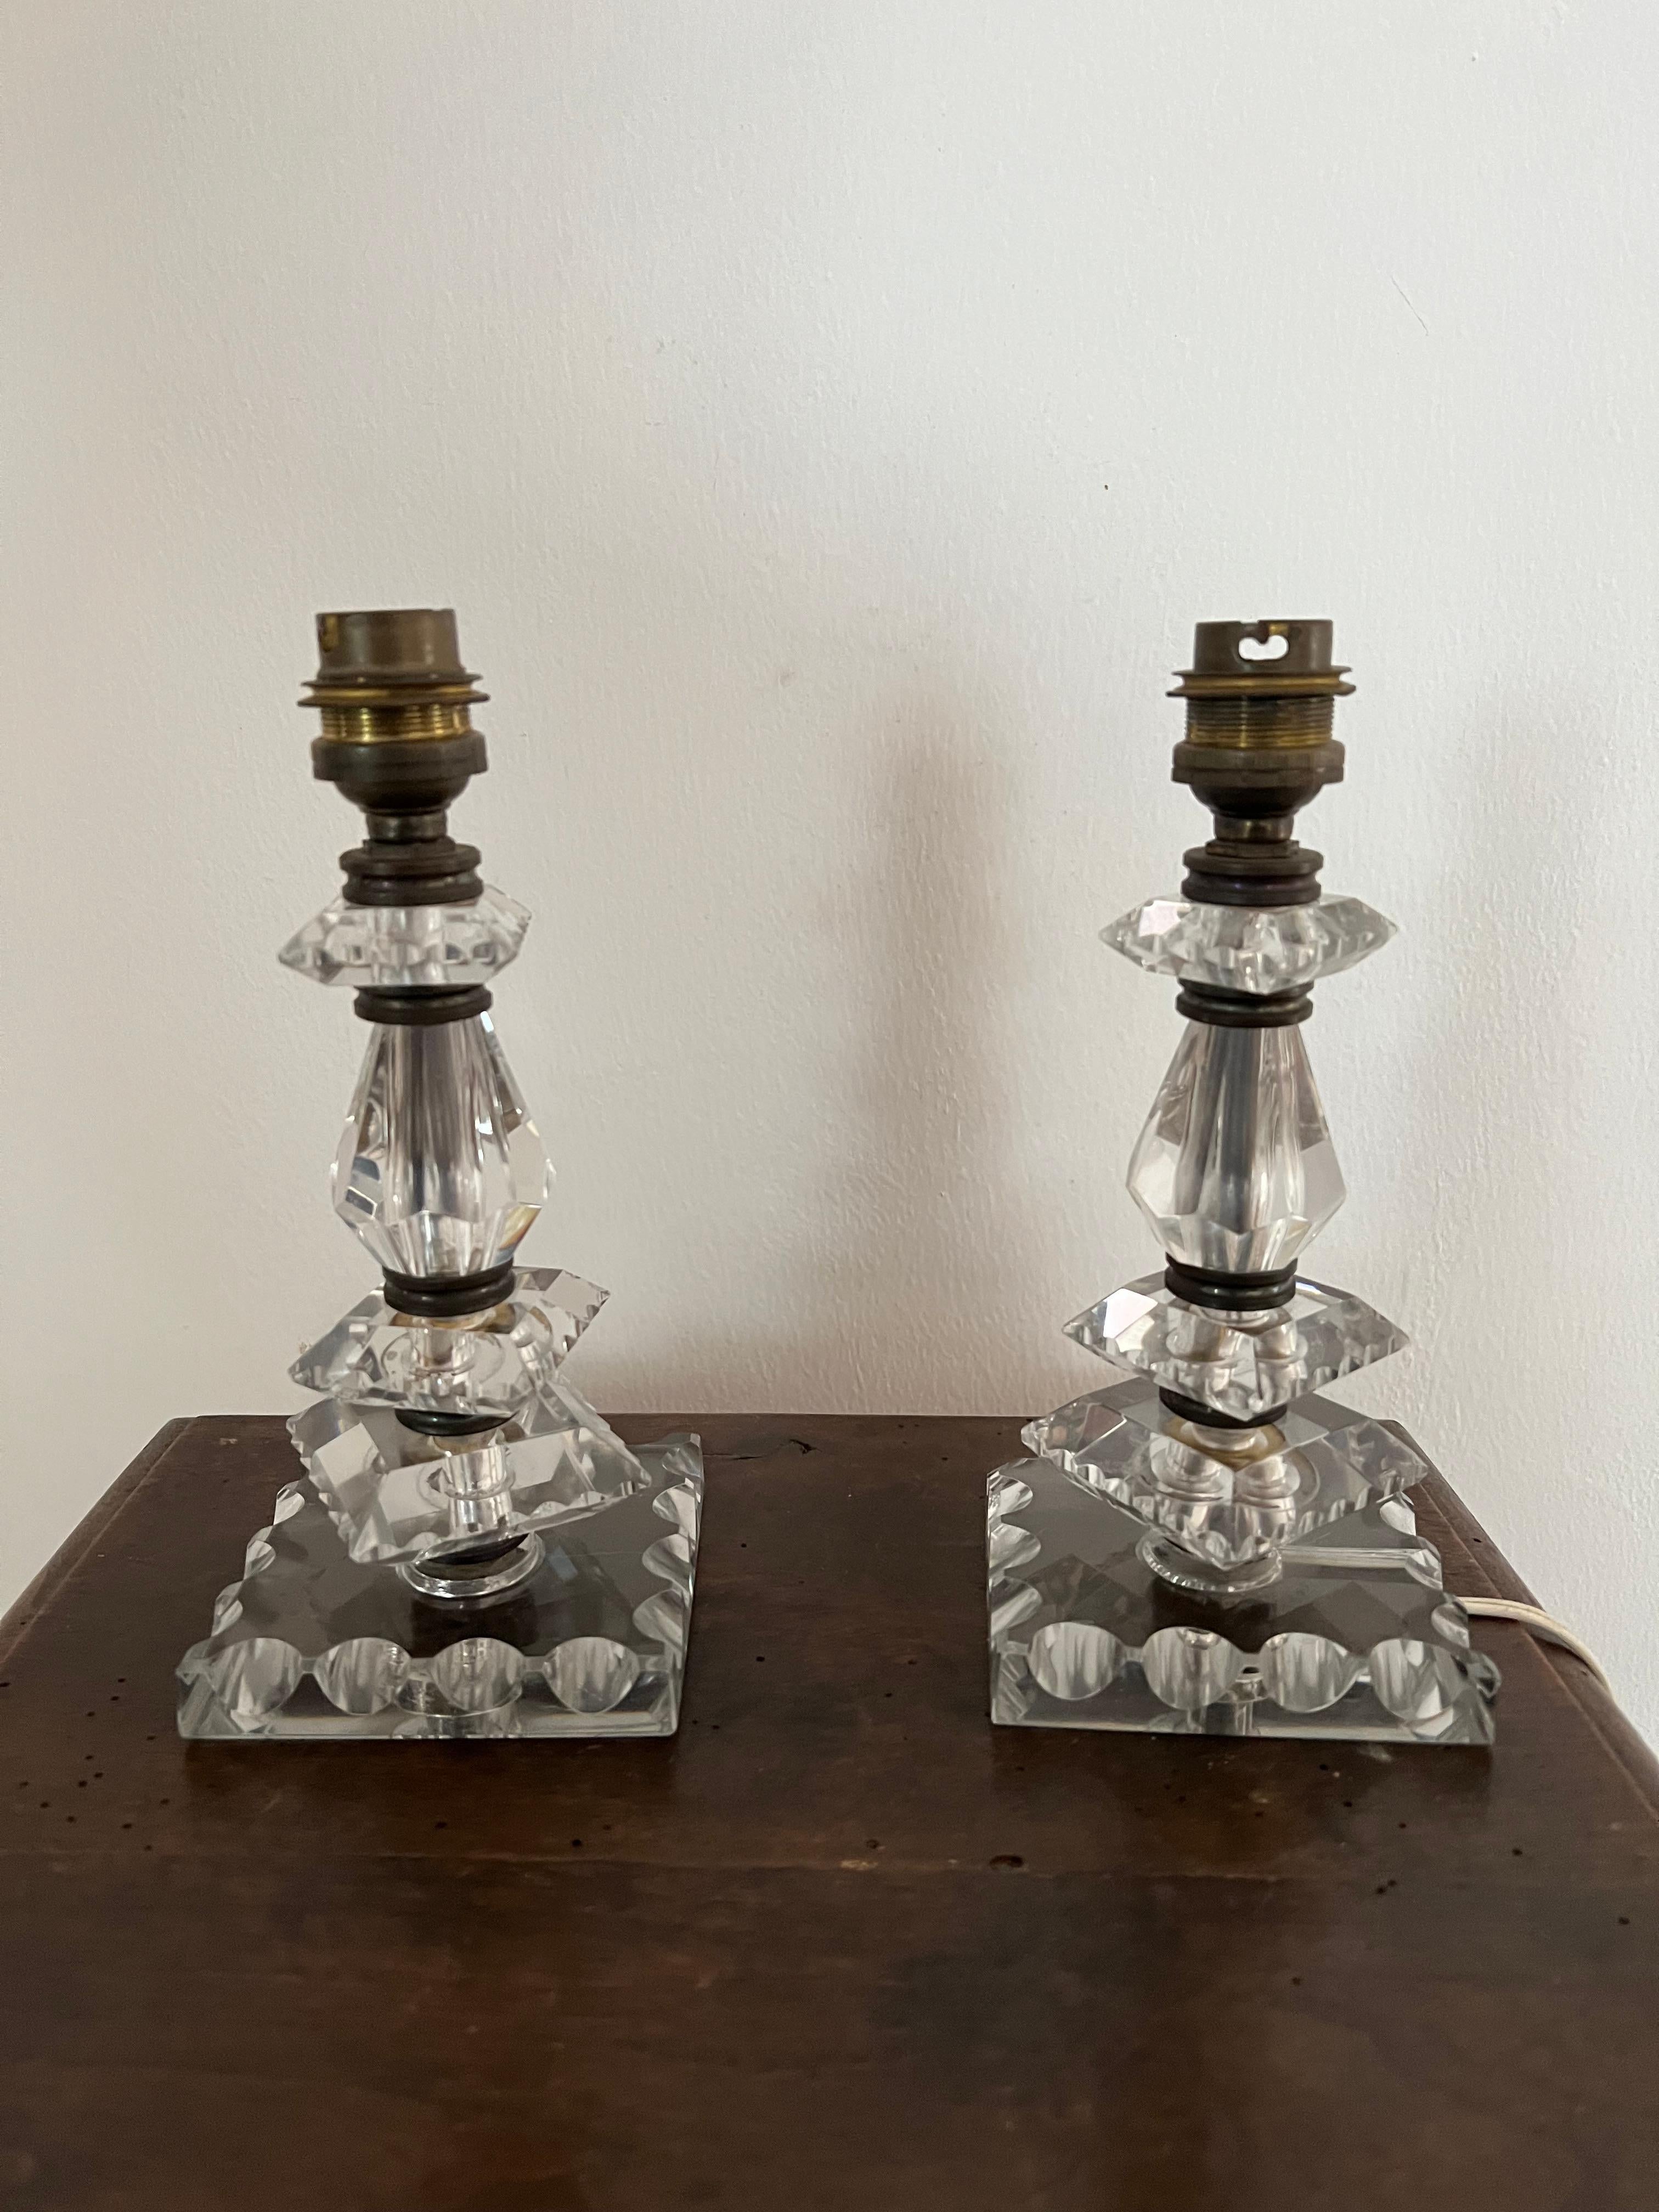 Precioso par de lámparas de sobremesa de Baccarat, Francia, en cristal de plomo tallado a mano, hacia 1940.
Las piezas 